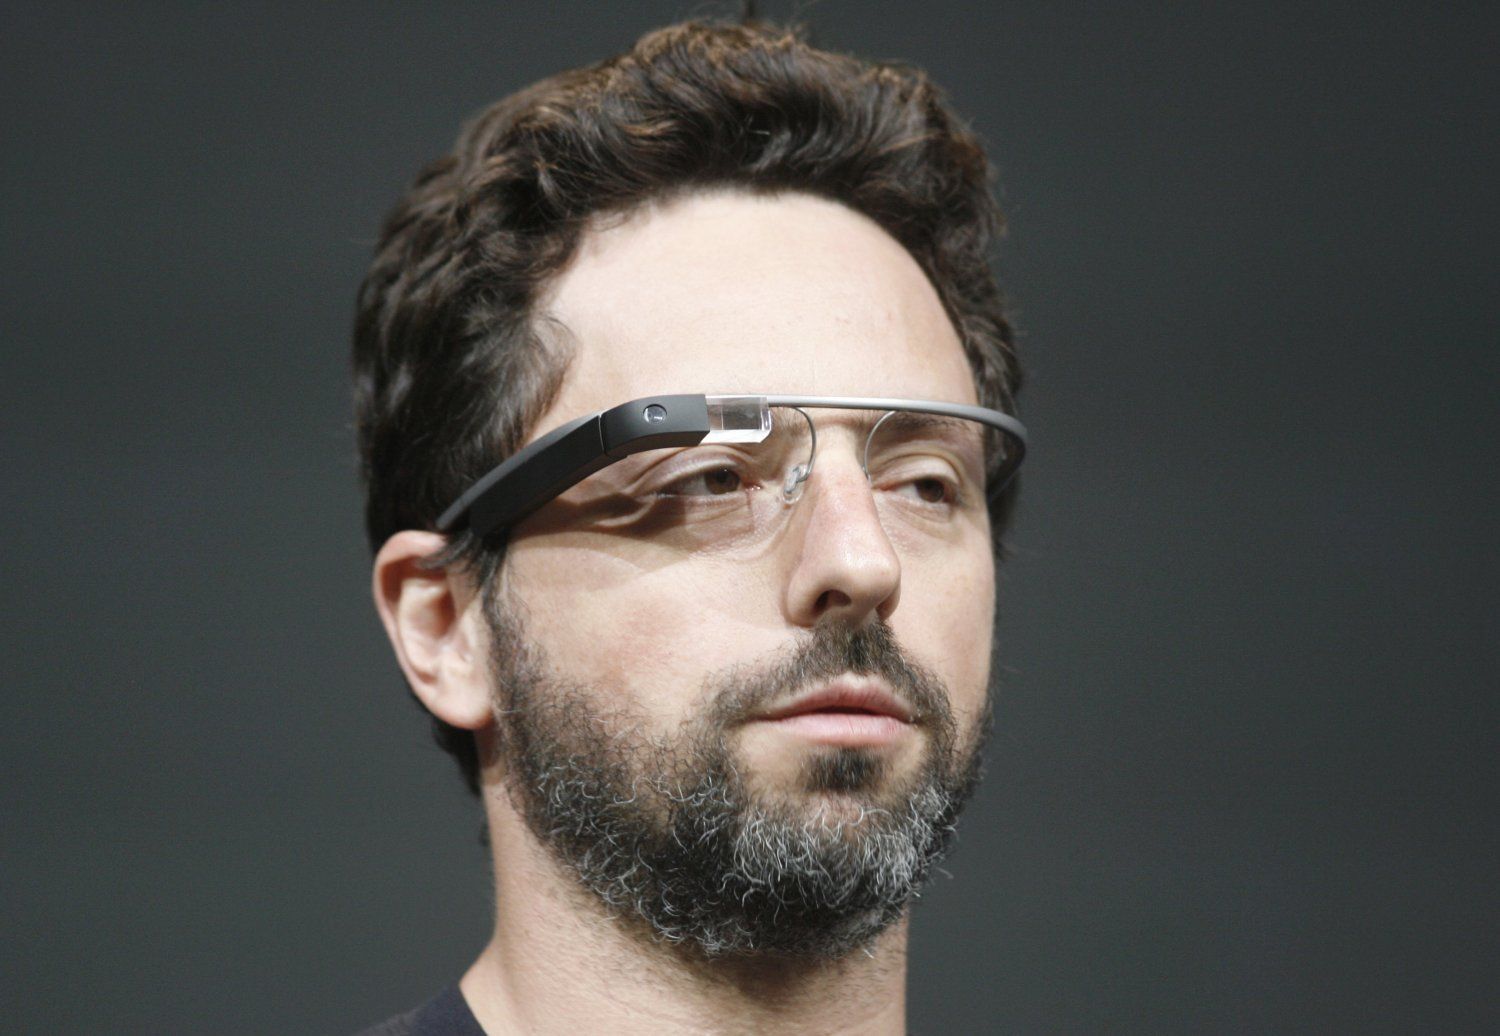 La faille critique des Google Glass découverte par Lookout date de deux mois. L’éditeur a immédiatement informé Google, qui a rapidement mis au point un correctif du firmware des lunettes. © Google